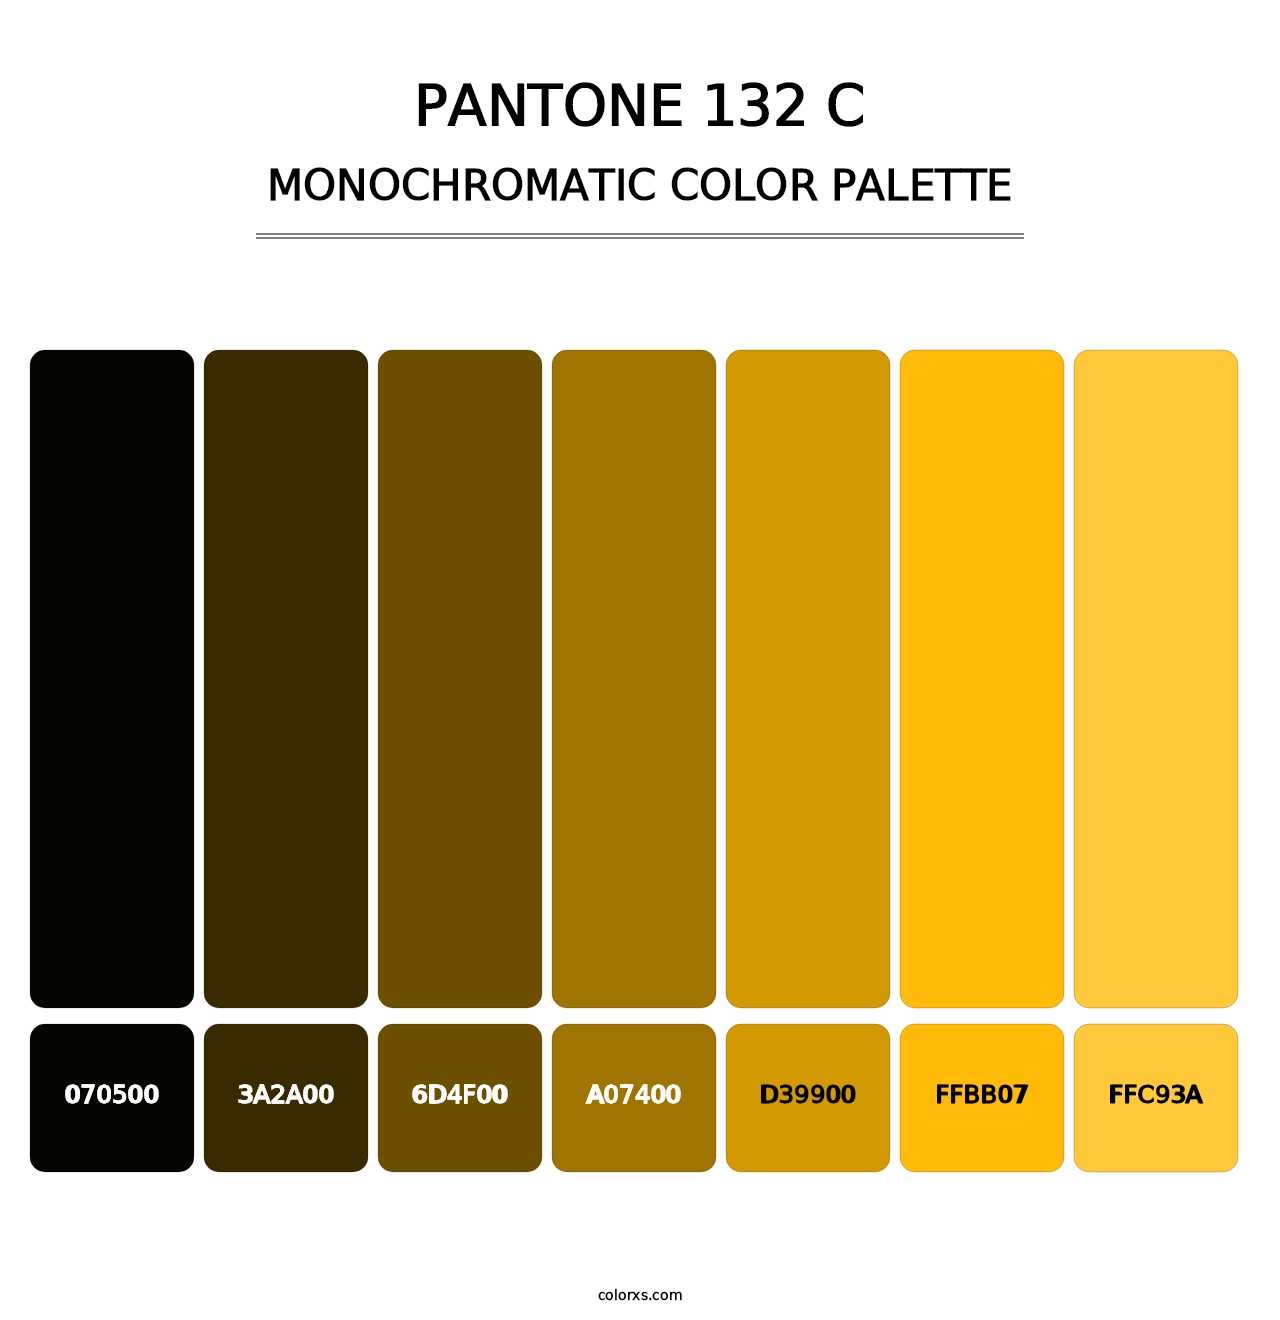 PANTONE 132 C - Monochromatic Color Palette